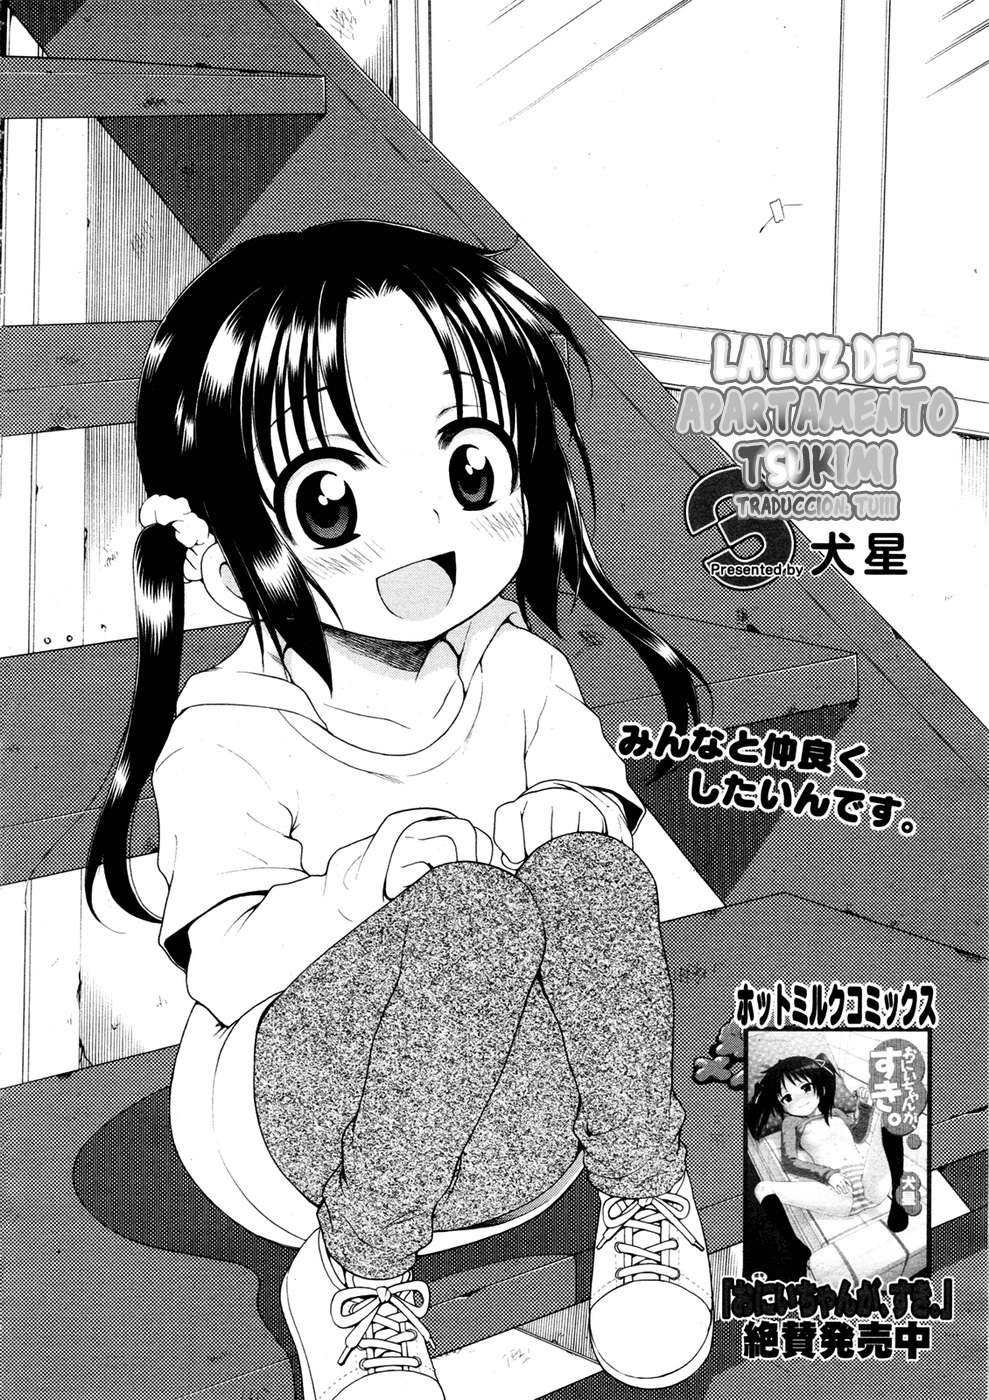 Tsukimisou No Akari (La Luz Del Apartamento Tsukimi) Chapter-3 - 1